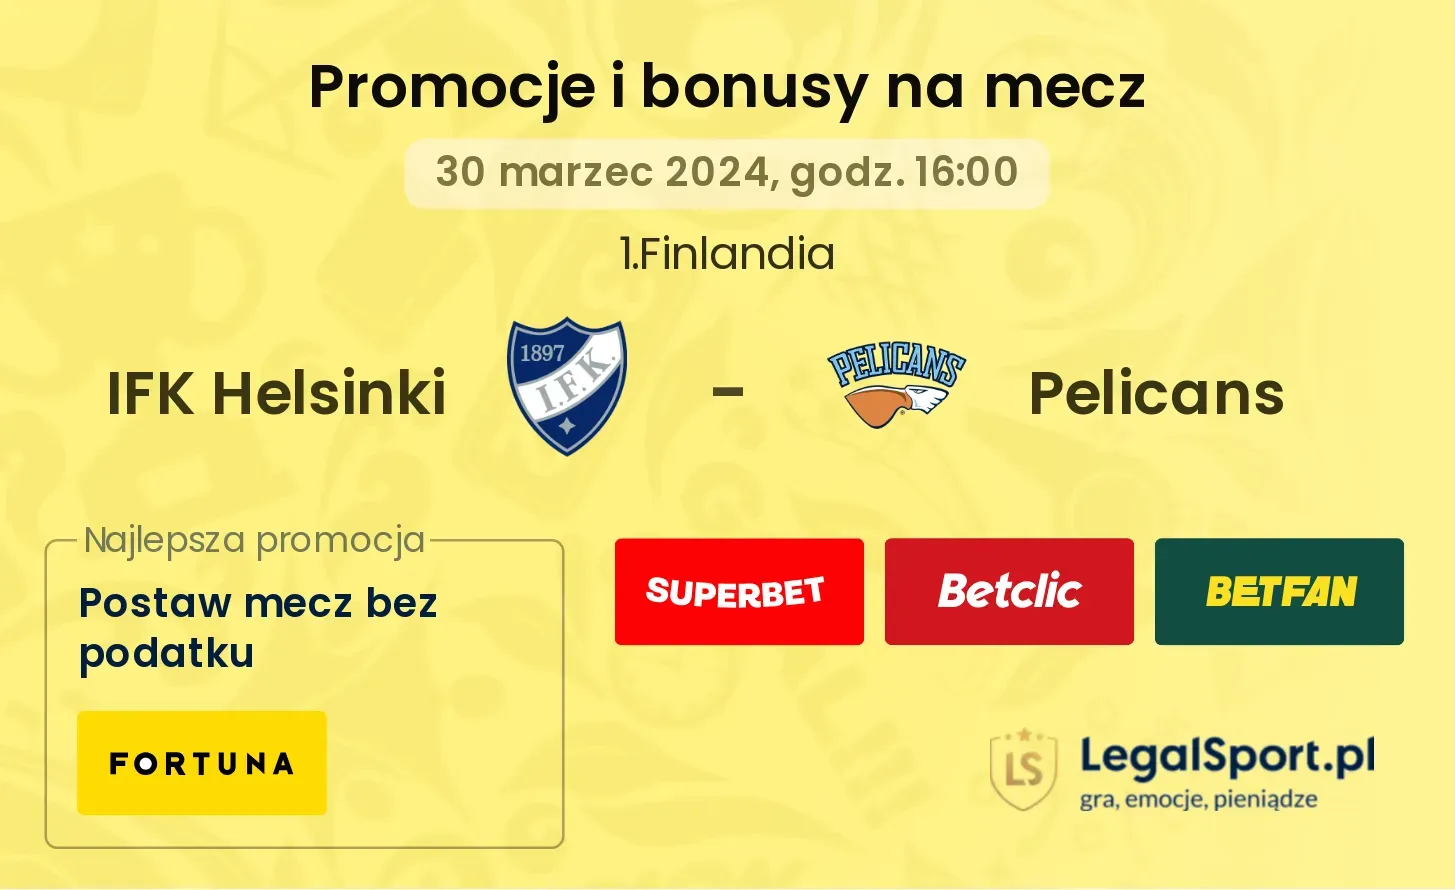 IFK Helsinki - Pelicans promocje bonusy na mecz